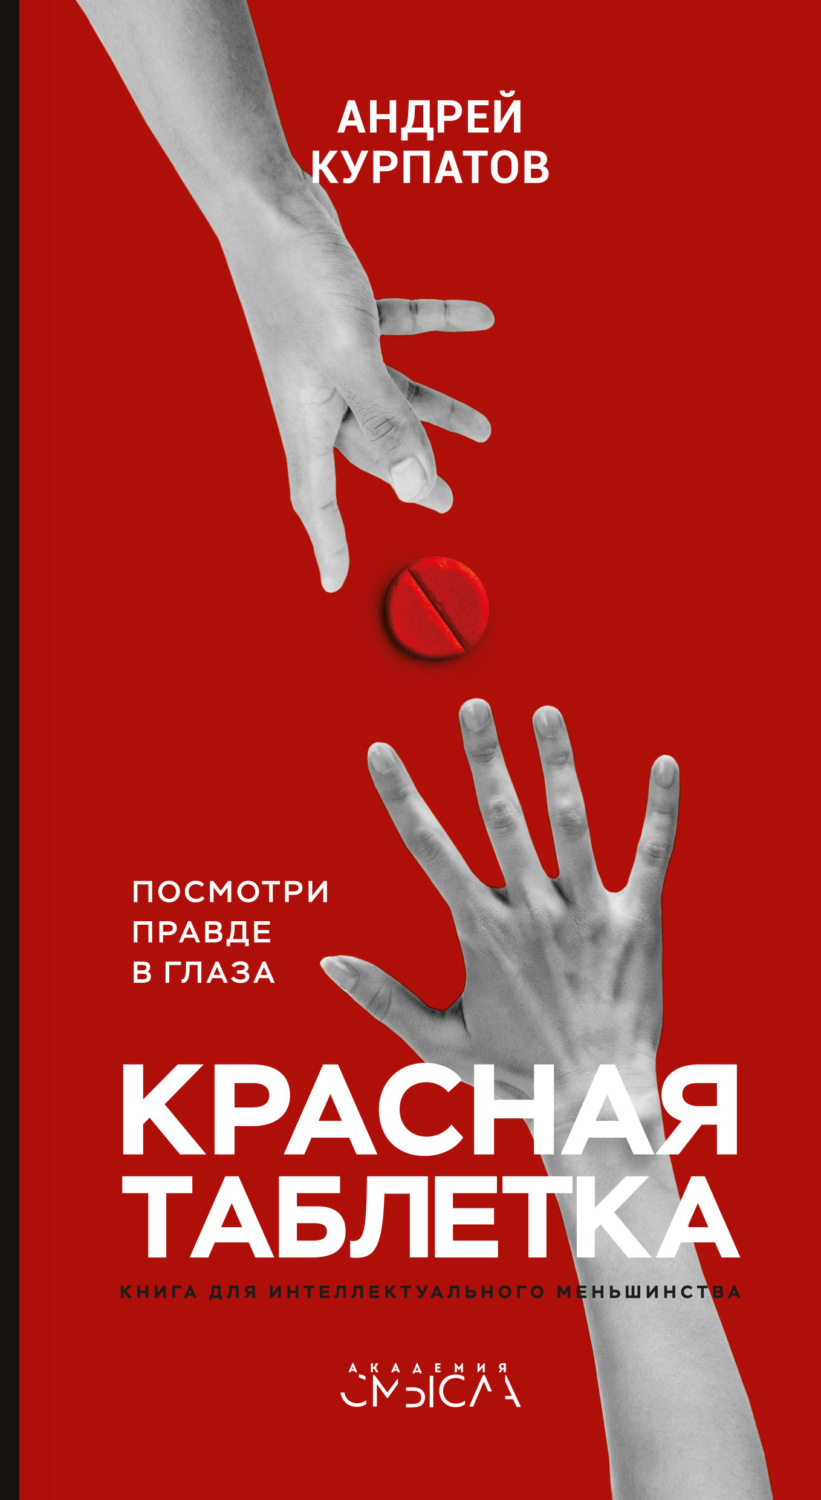 Отзывы о книге «Красная таблетка. Посмотри правде в глаза!», рецензии на книгу Андрея Курпатова, рейтинг в библиотеке Литрес